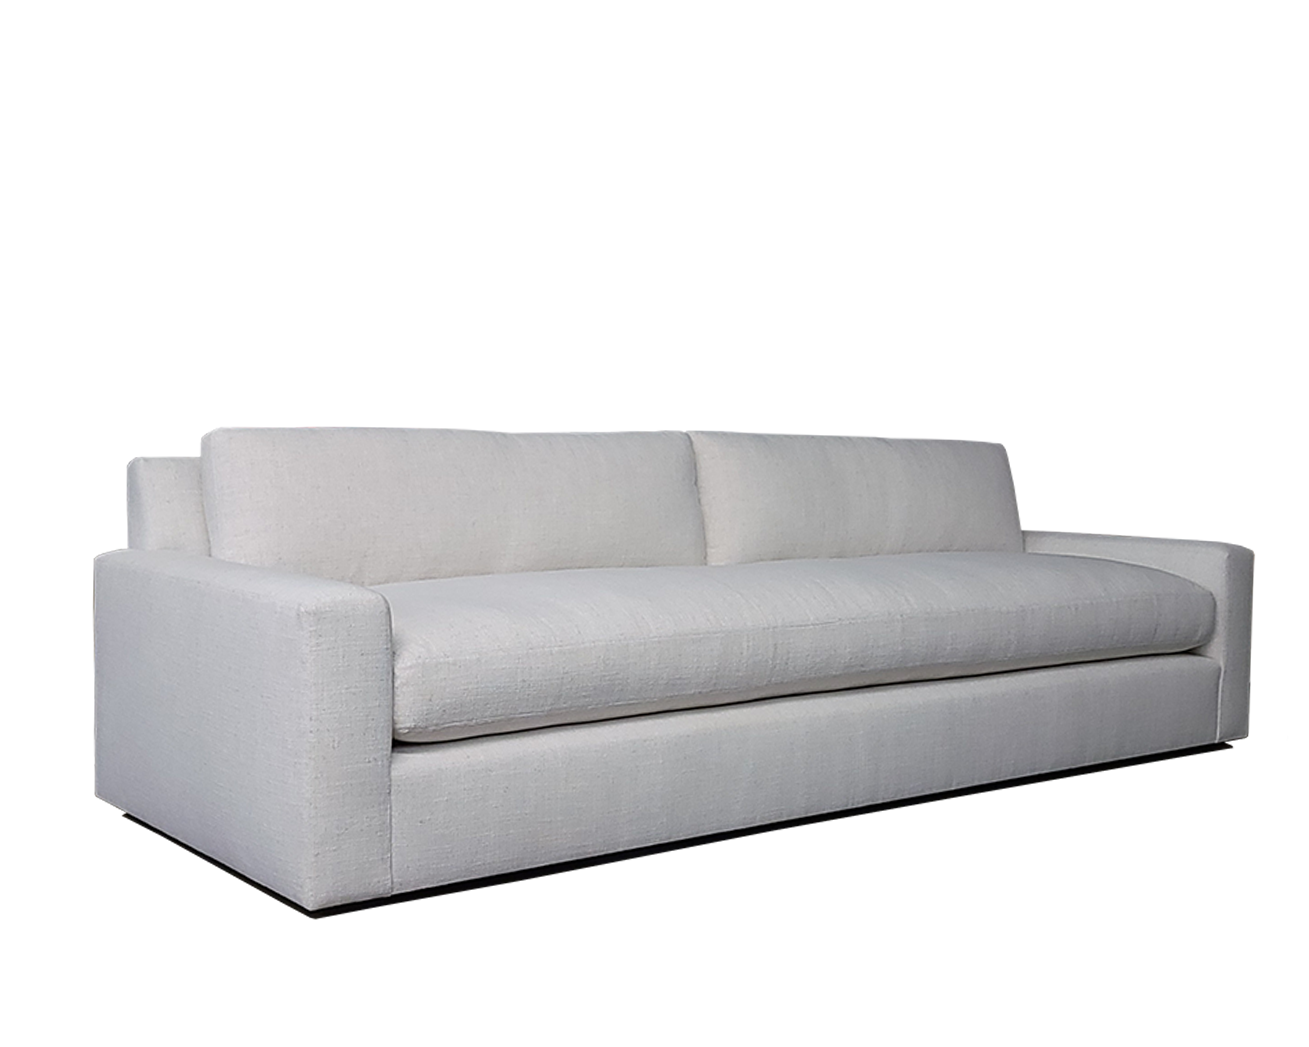 Livingston Sofa (Side Resized).png